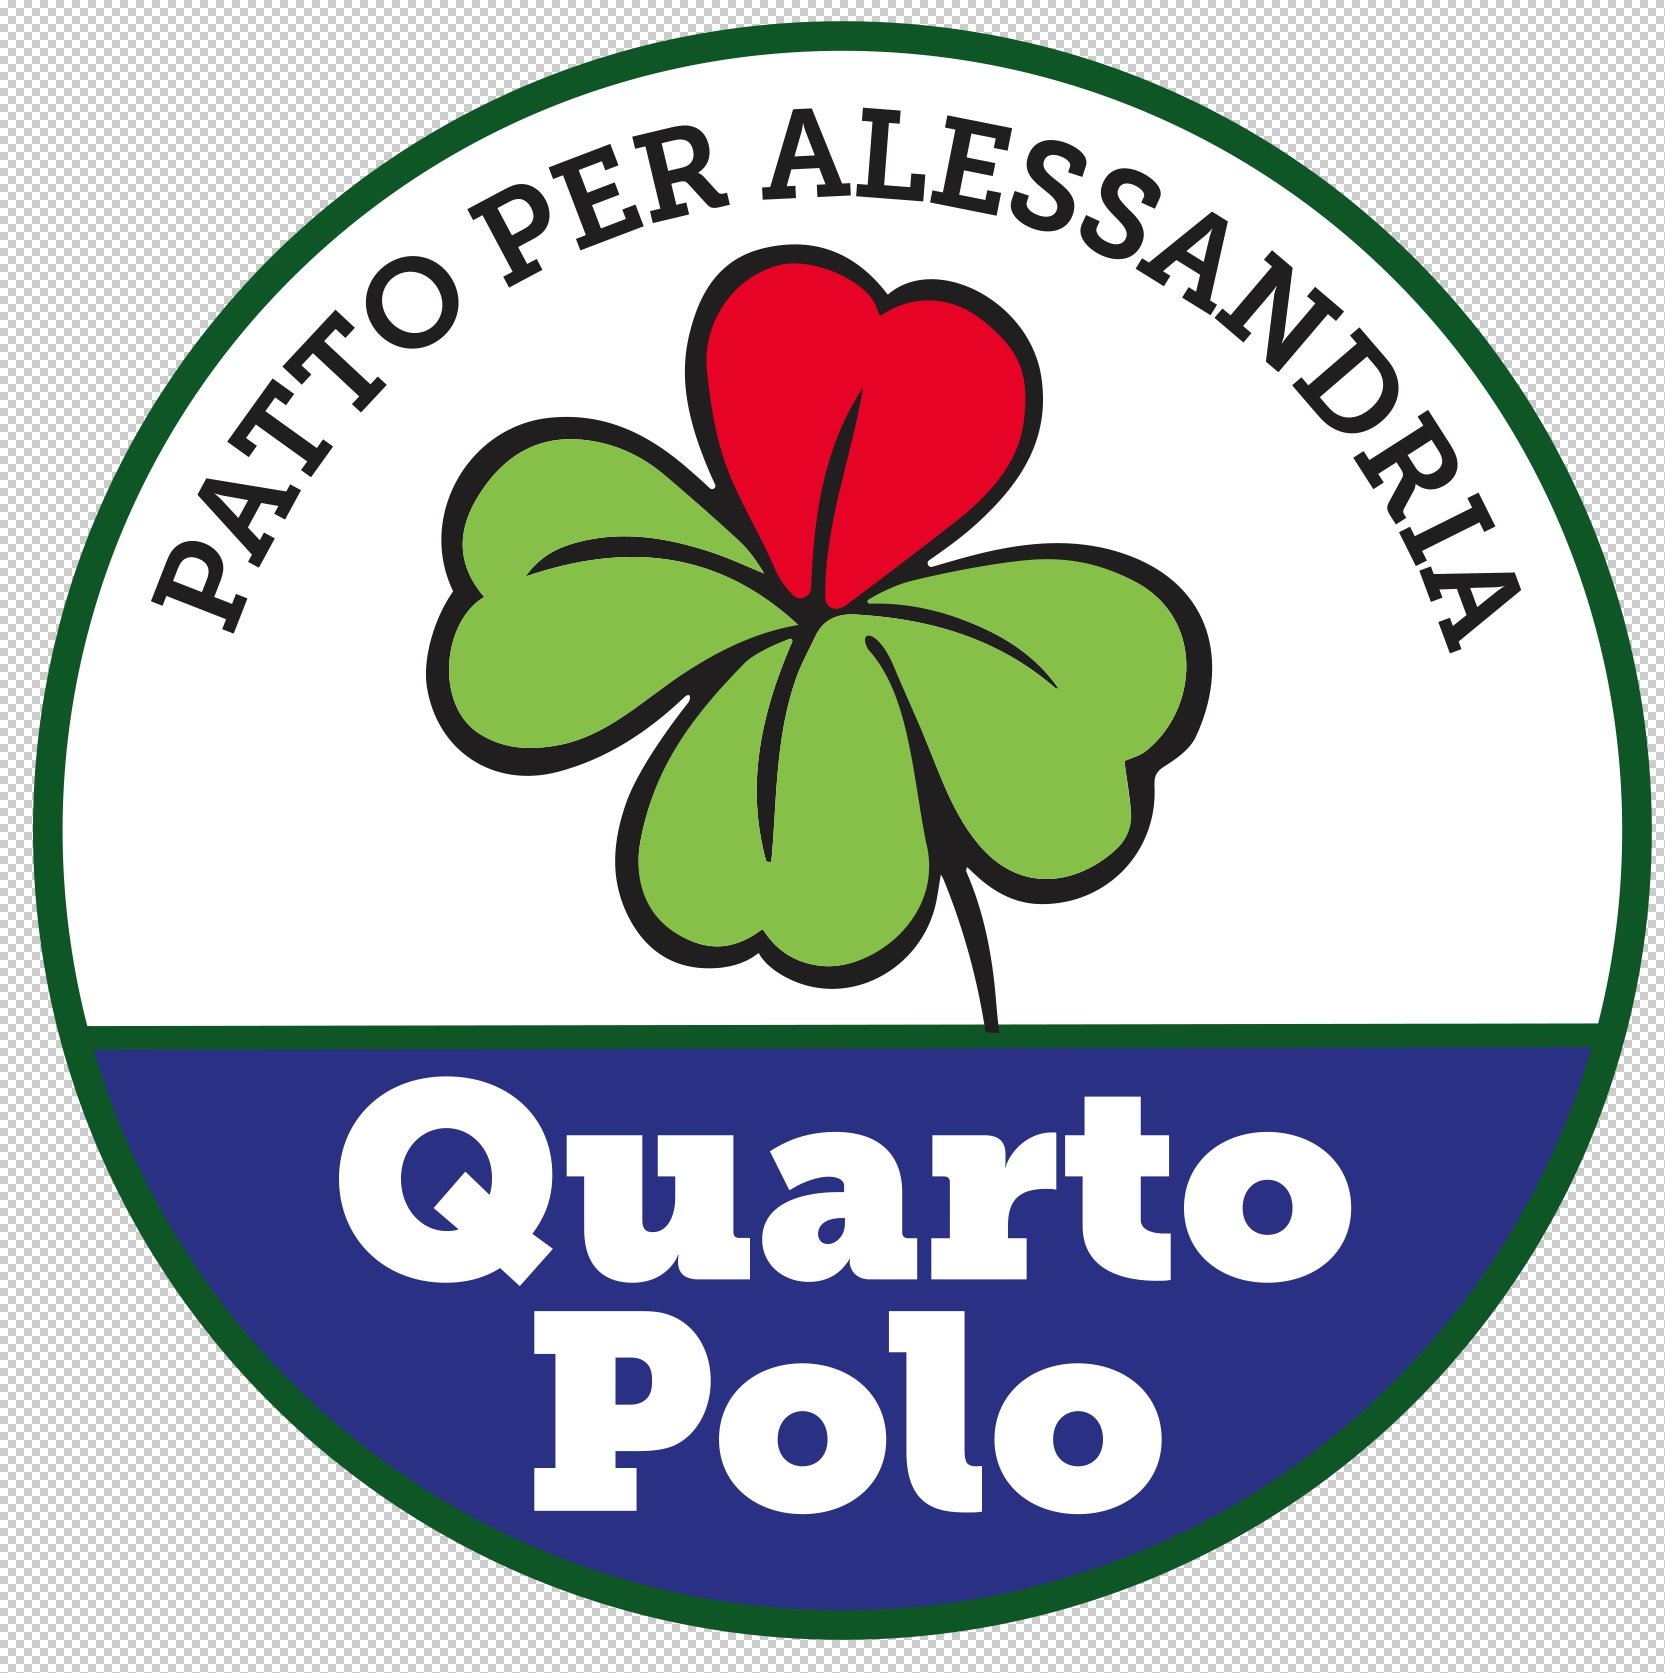 Quarto Polo: “Annaratone da Renzi? Mancanza di stile, doveva dimettersi”